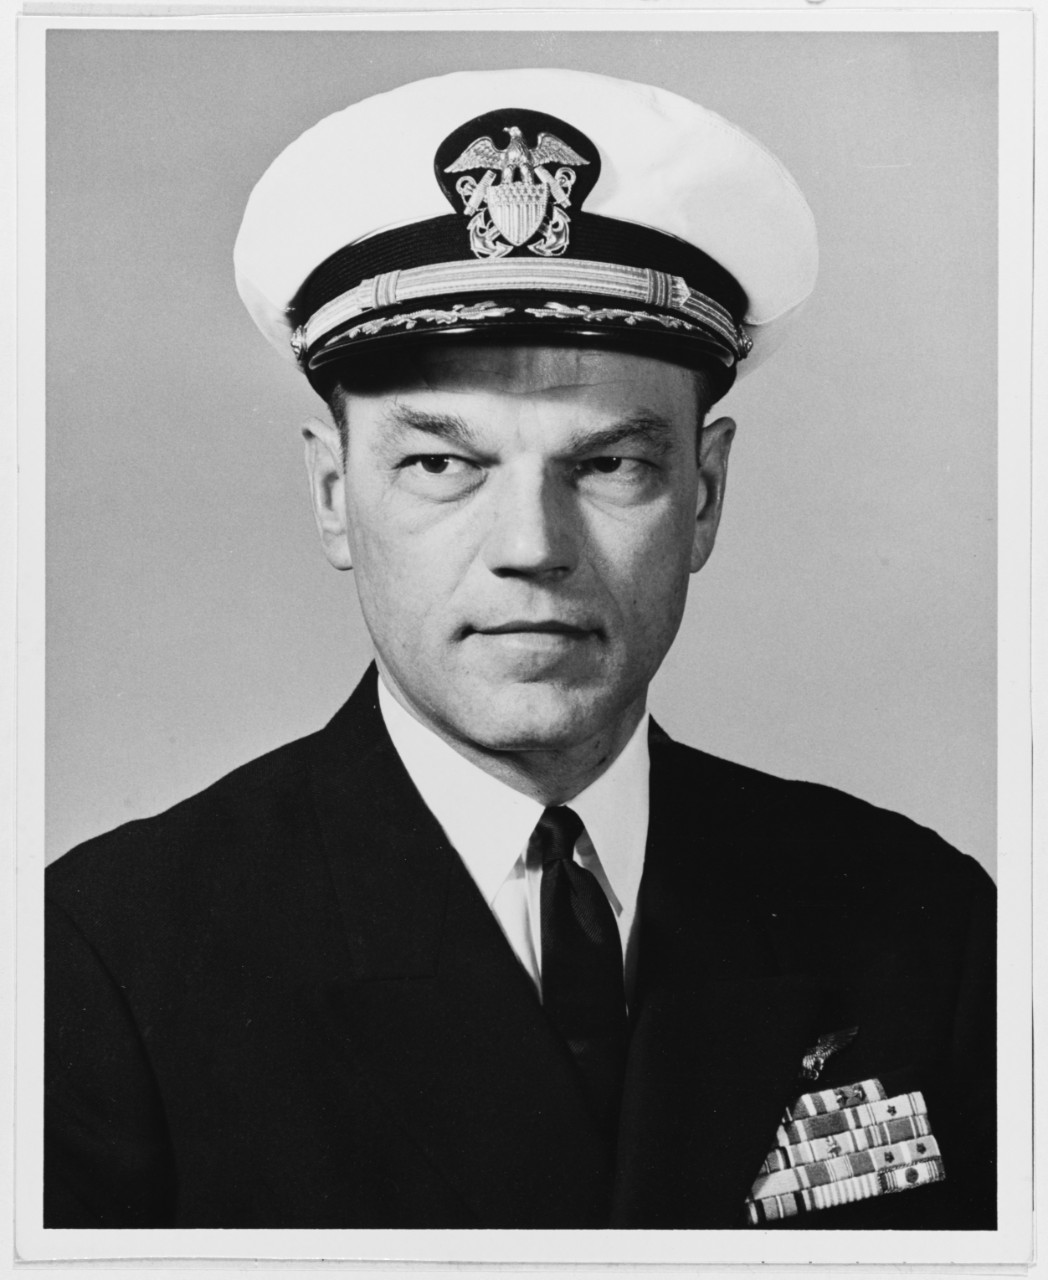 Captain William M. Harnish, USN